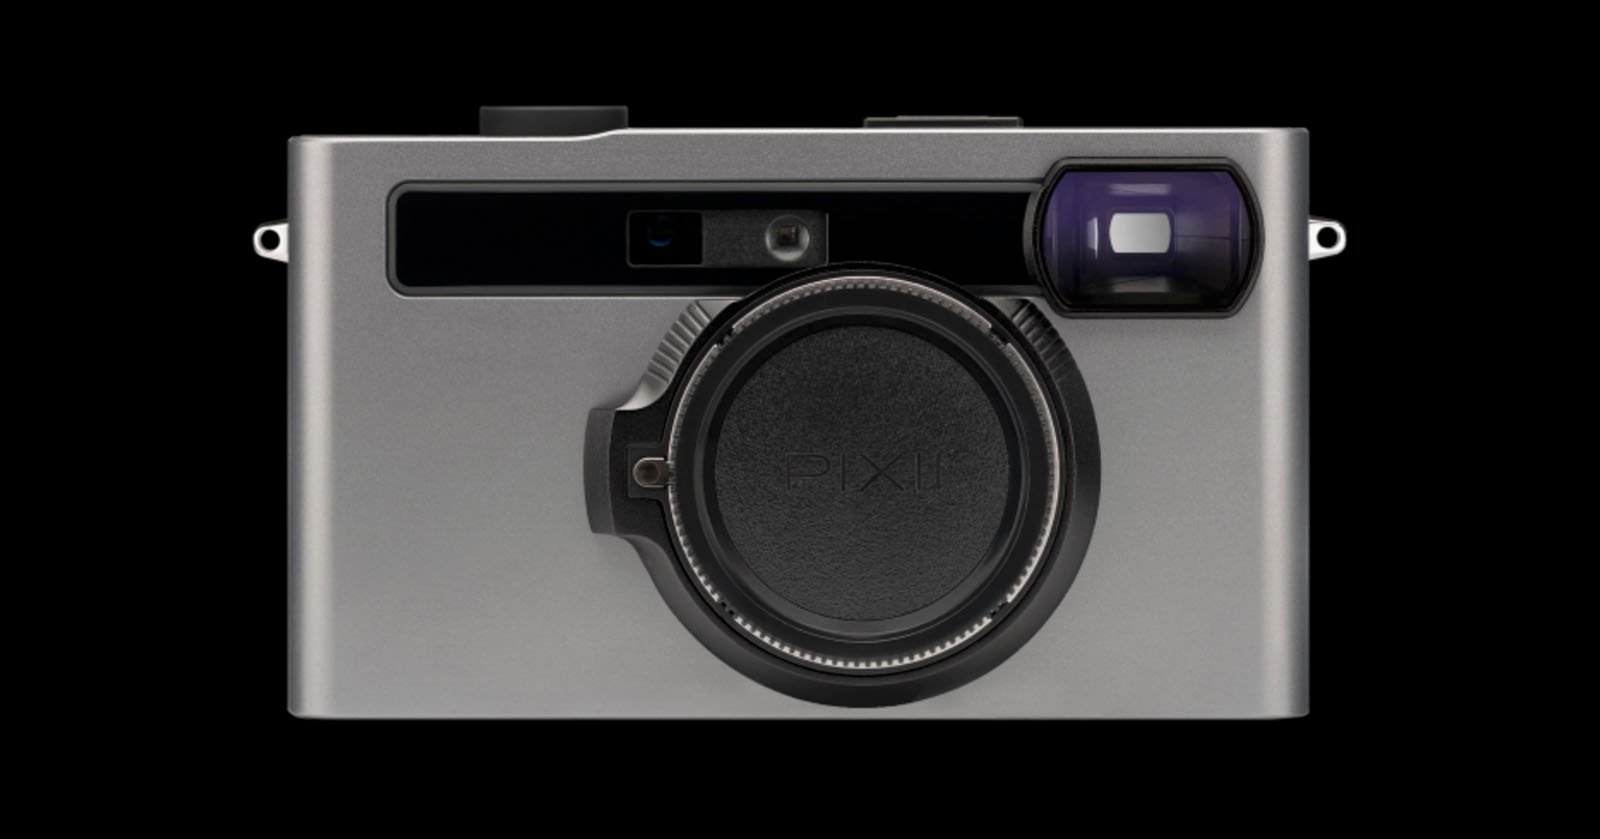  pixii digital rangefinder has extended viewfinder 